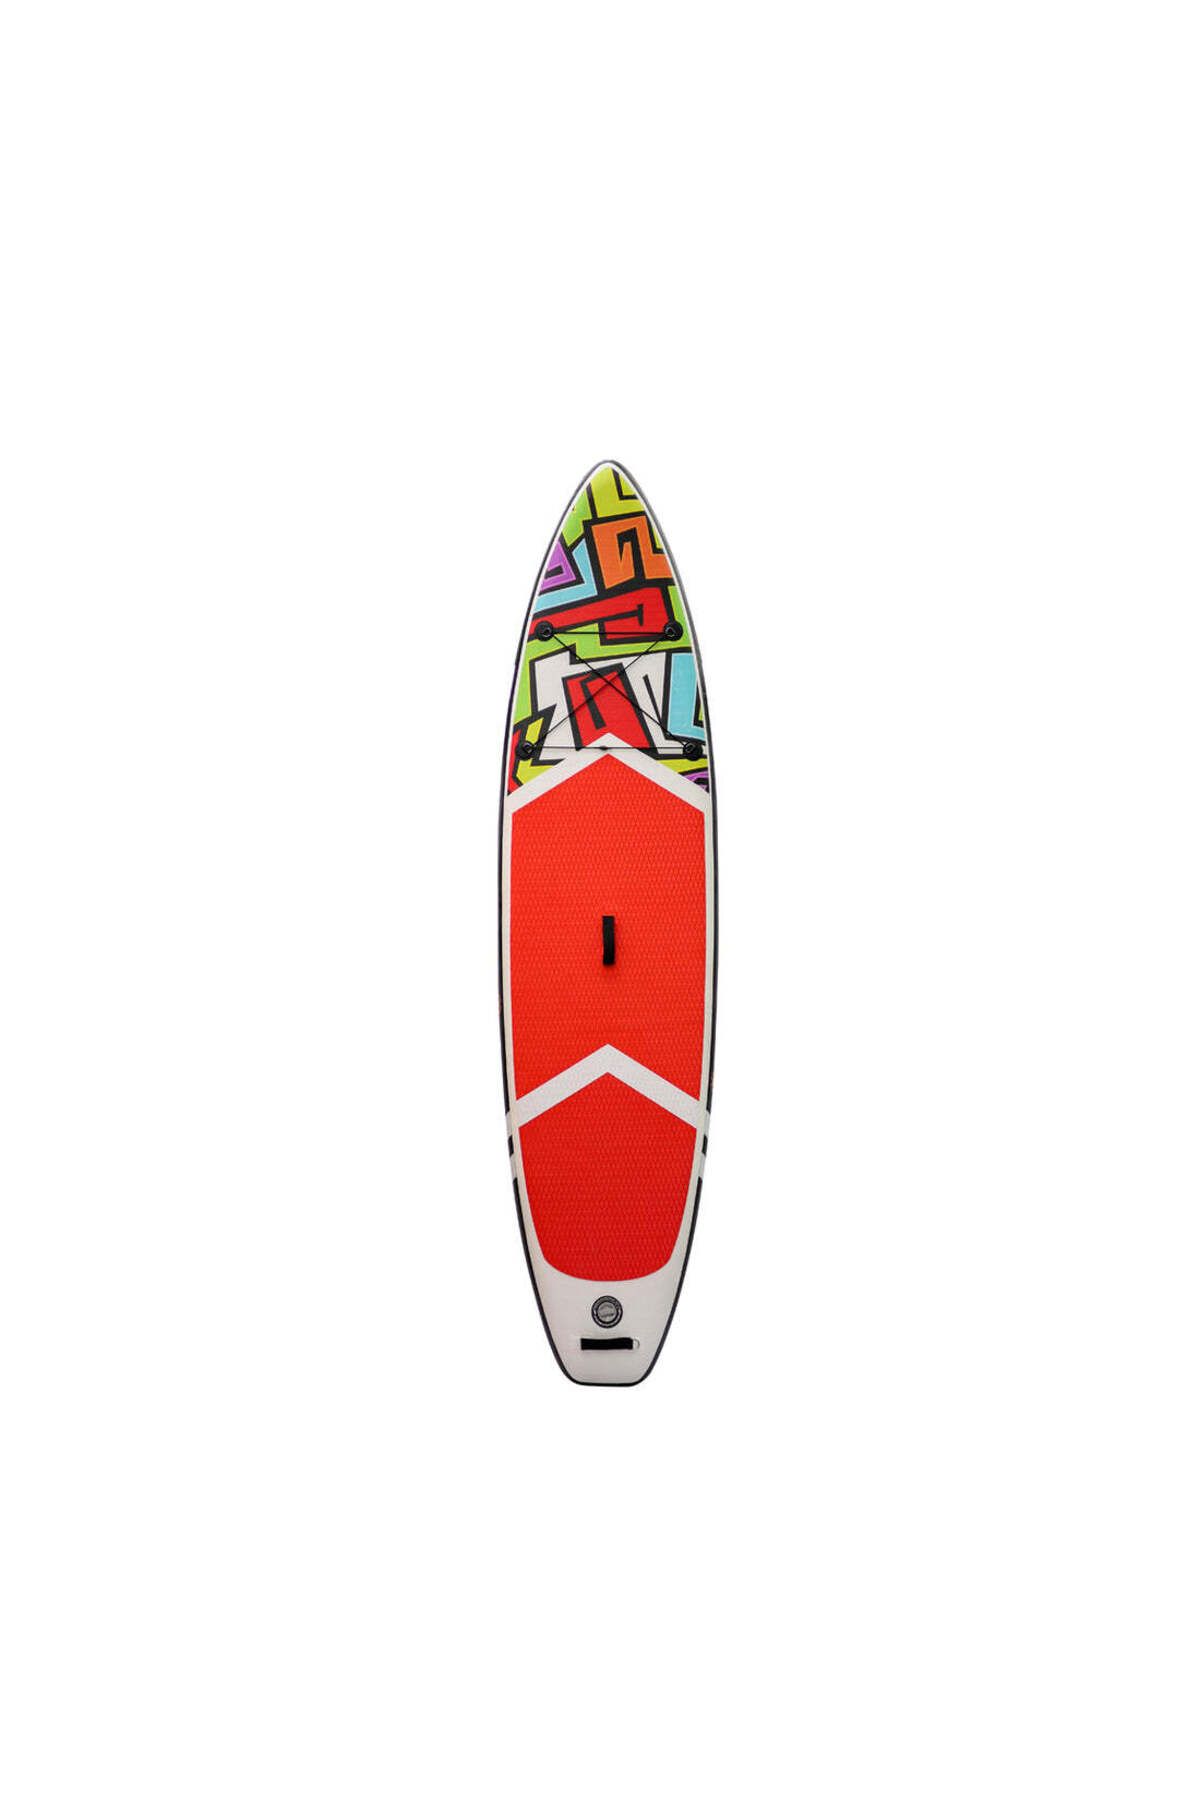 Greenmall Bondi Şişirilebilir Paddle Board - SUP 305 cm